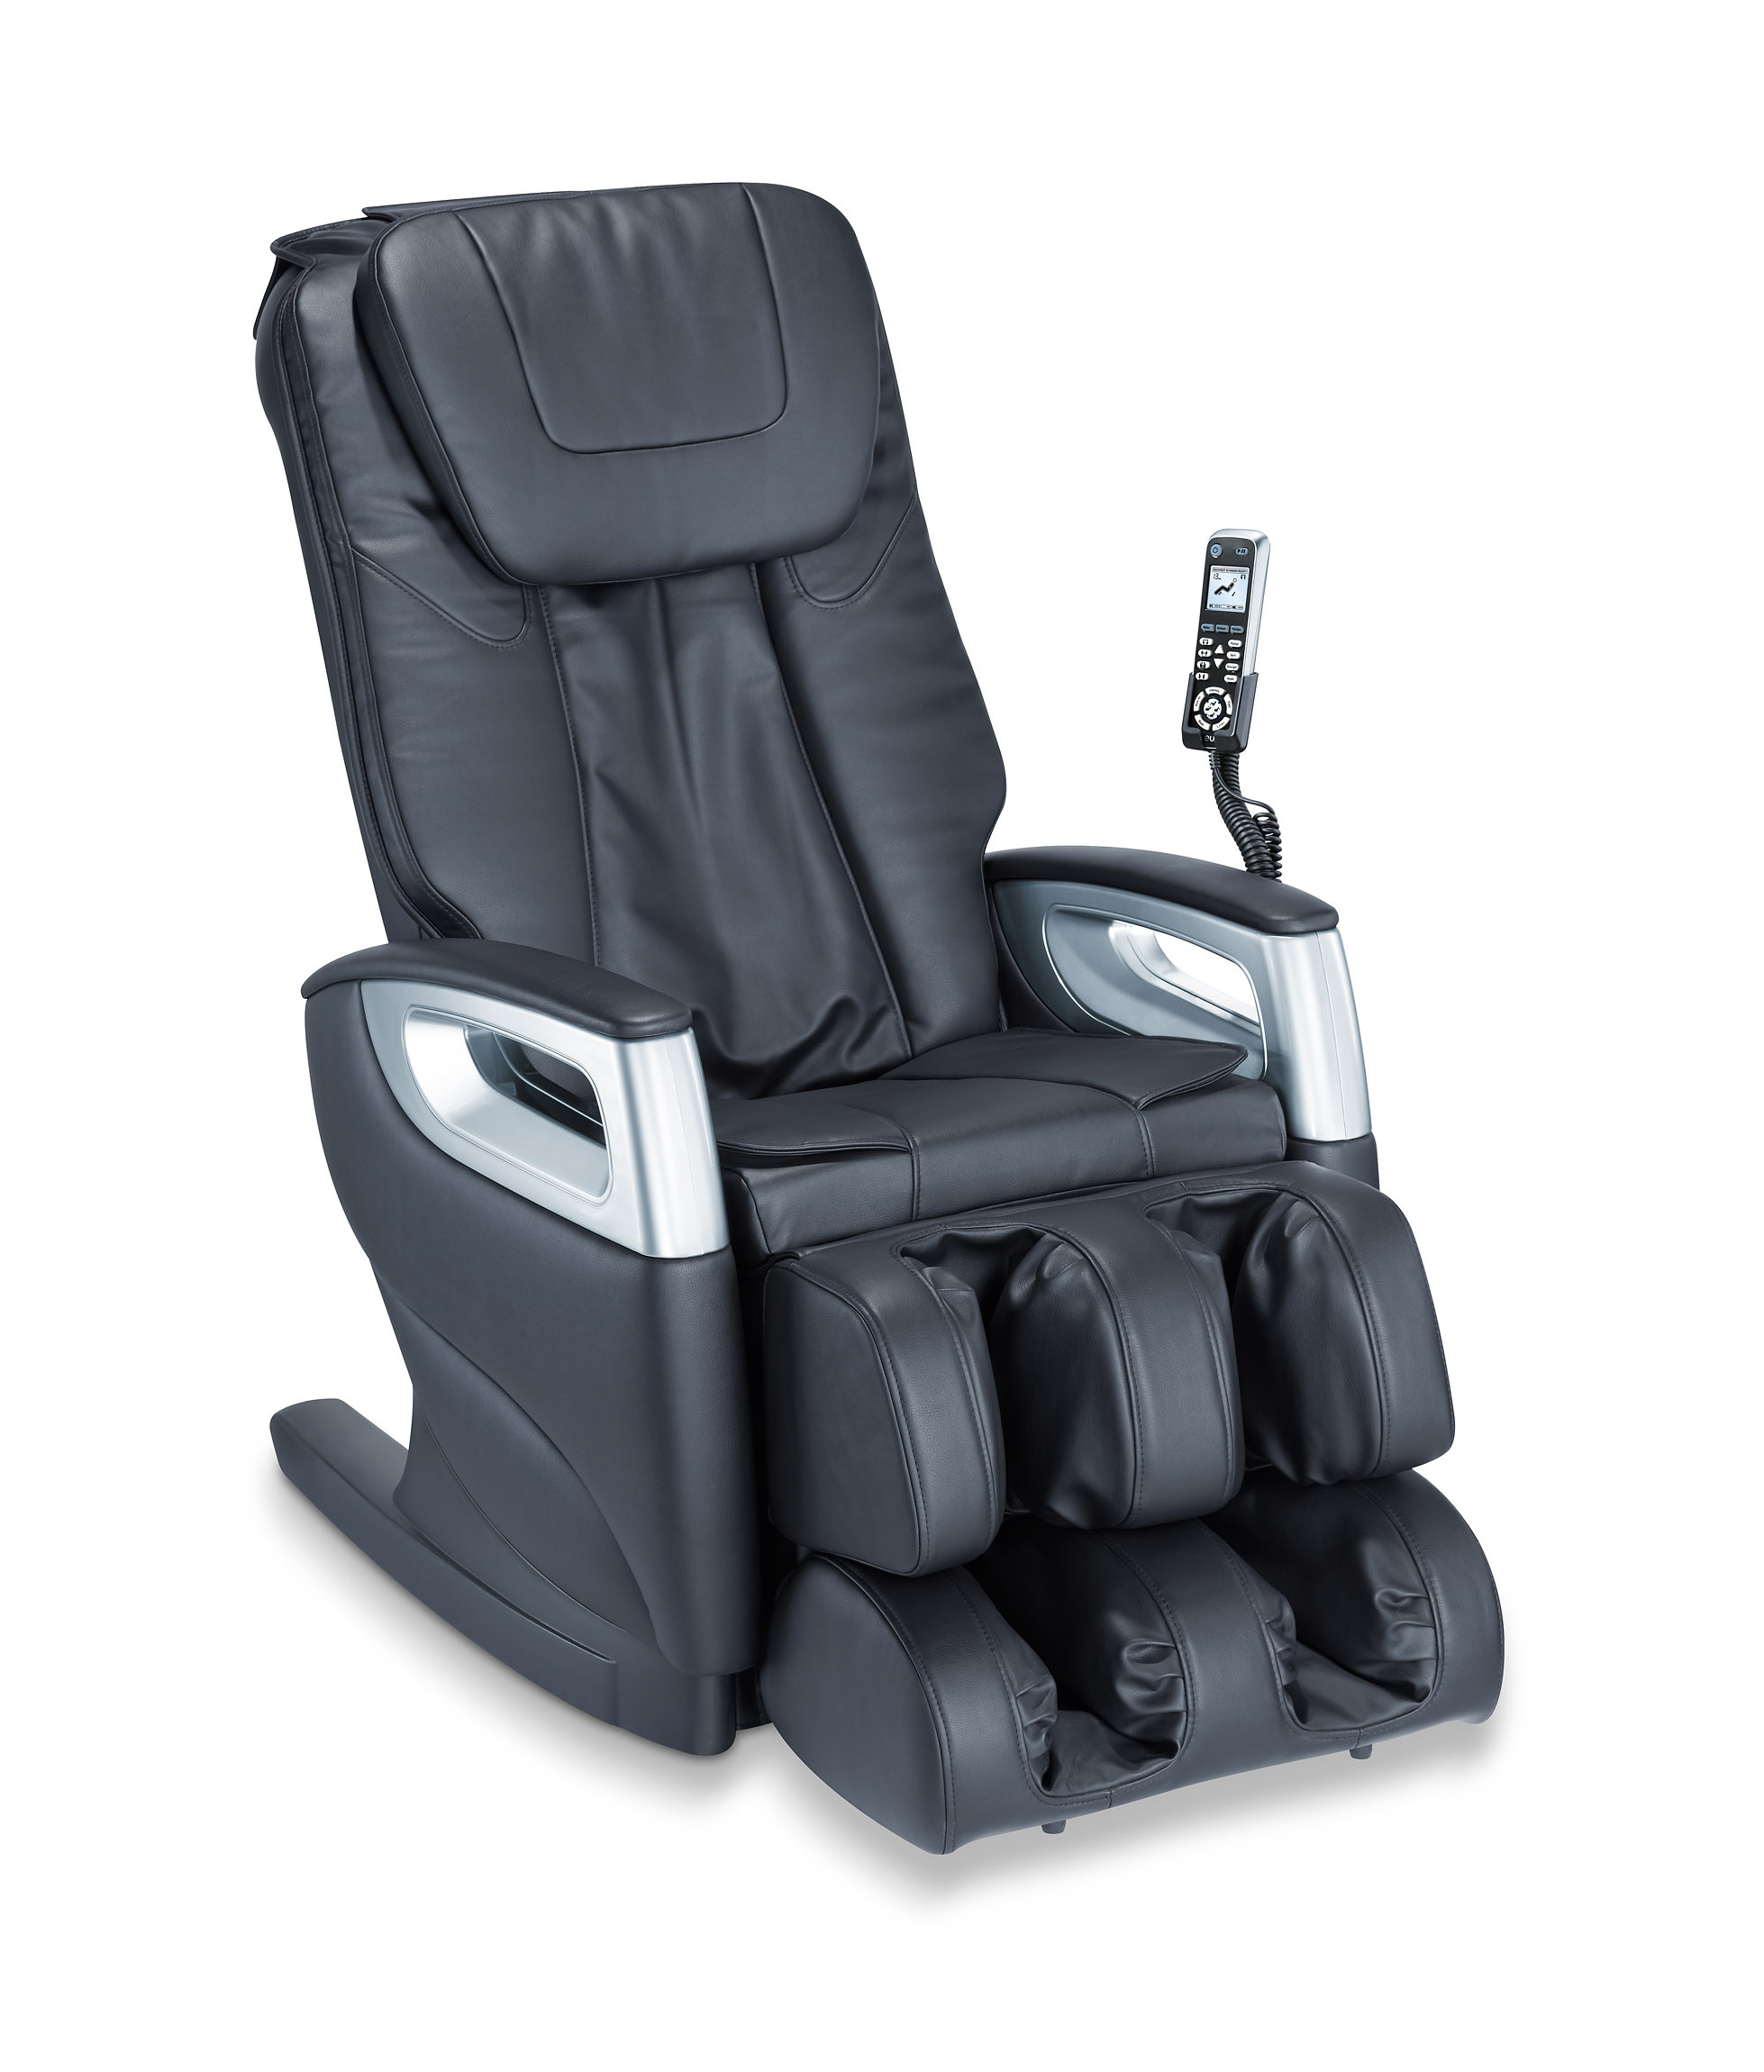 MC 5000 fauteuil de massage deluxe - 1 pc